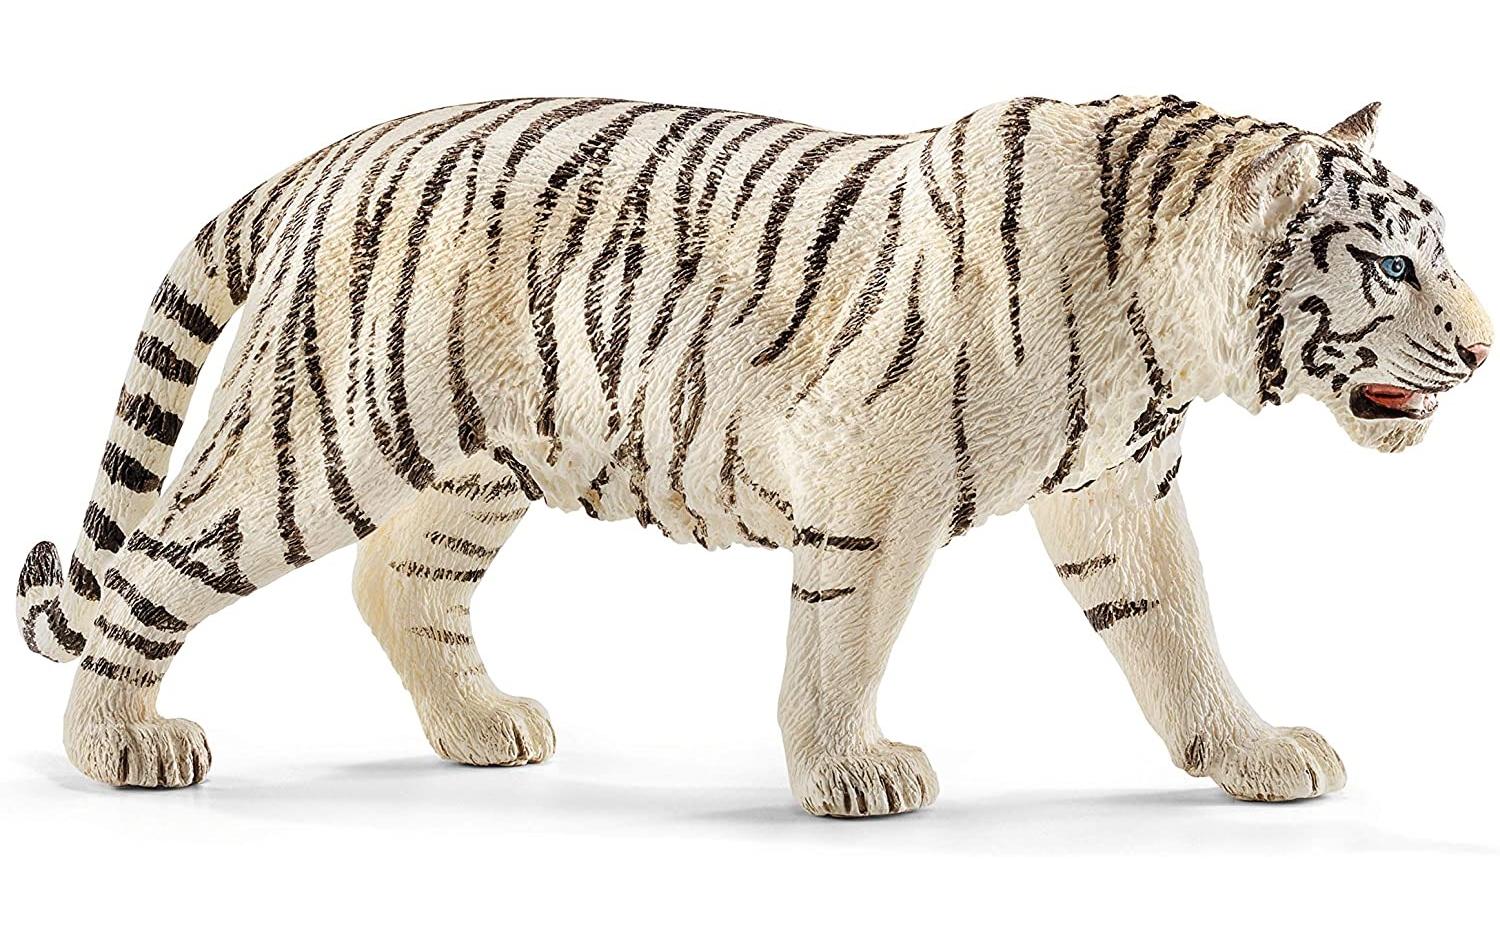 Schleich Spielzeugfigur Wild Life Tiger, weiss